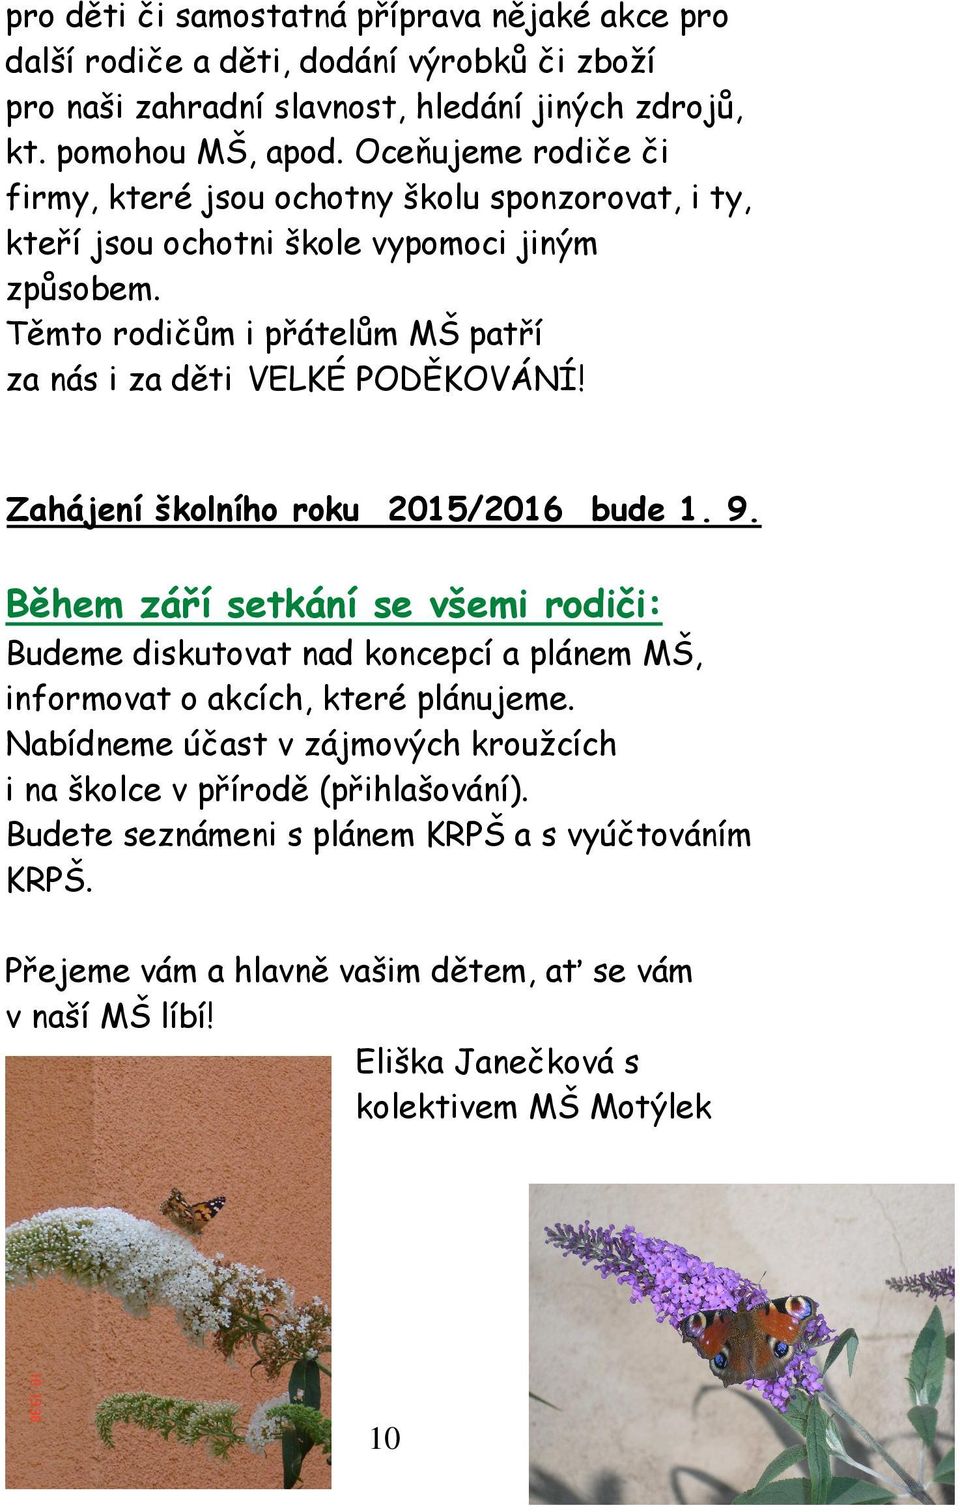 MATEŘSKÁ ŠKOLA MOTÝLEK Arabská 10/684, Praha 6 - PDF Stažení zdarma